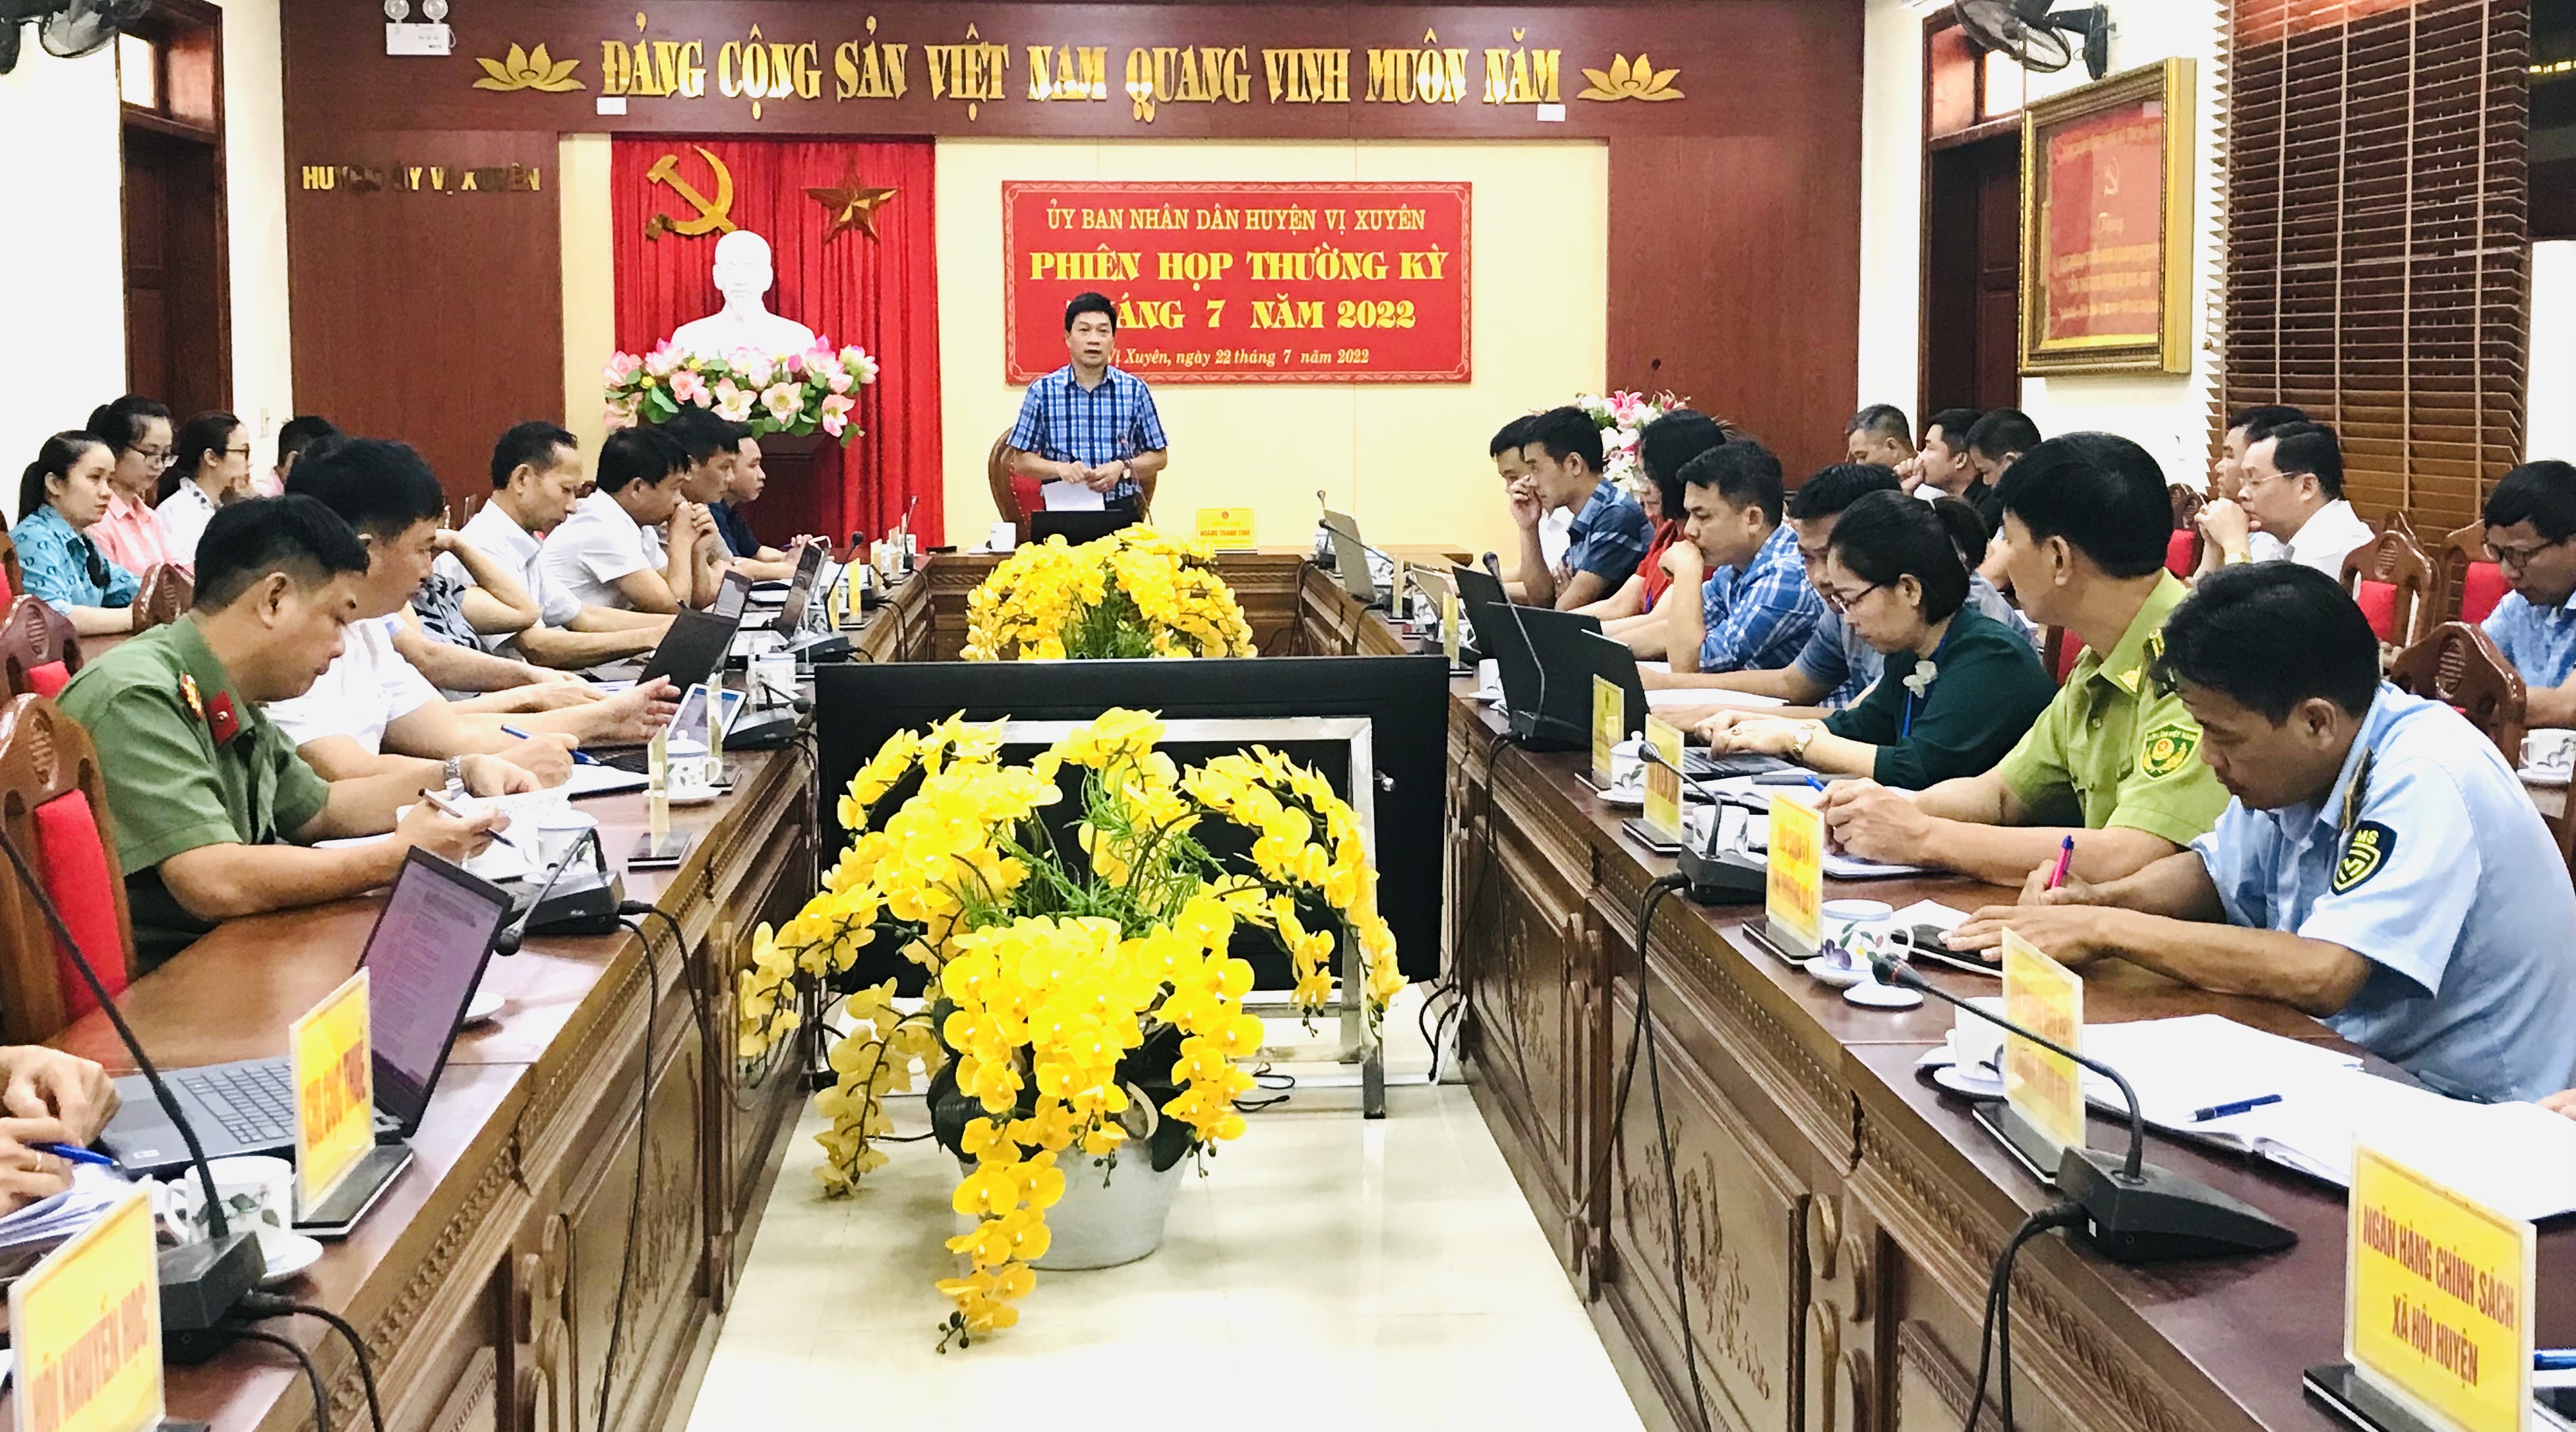 Phiên họp UBND huyện Vị Xuyên tháng 7 năm 2022